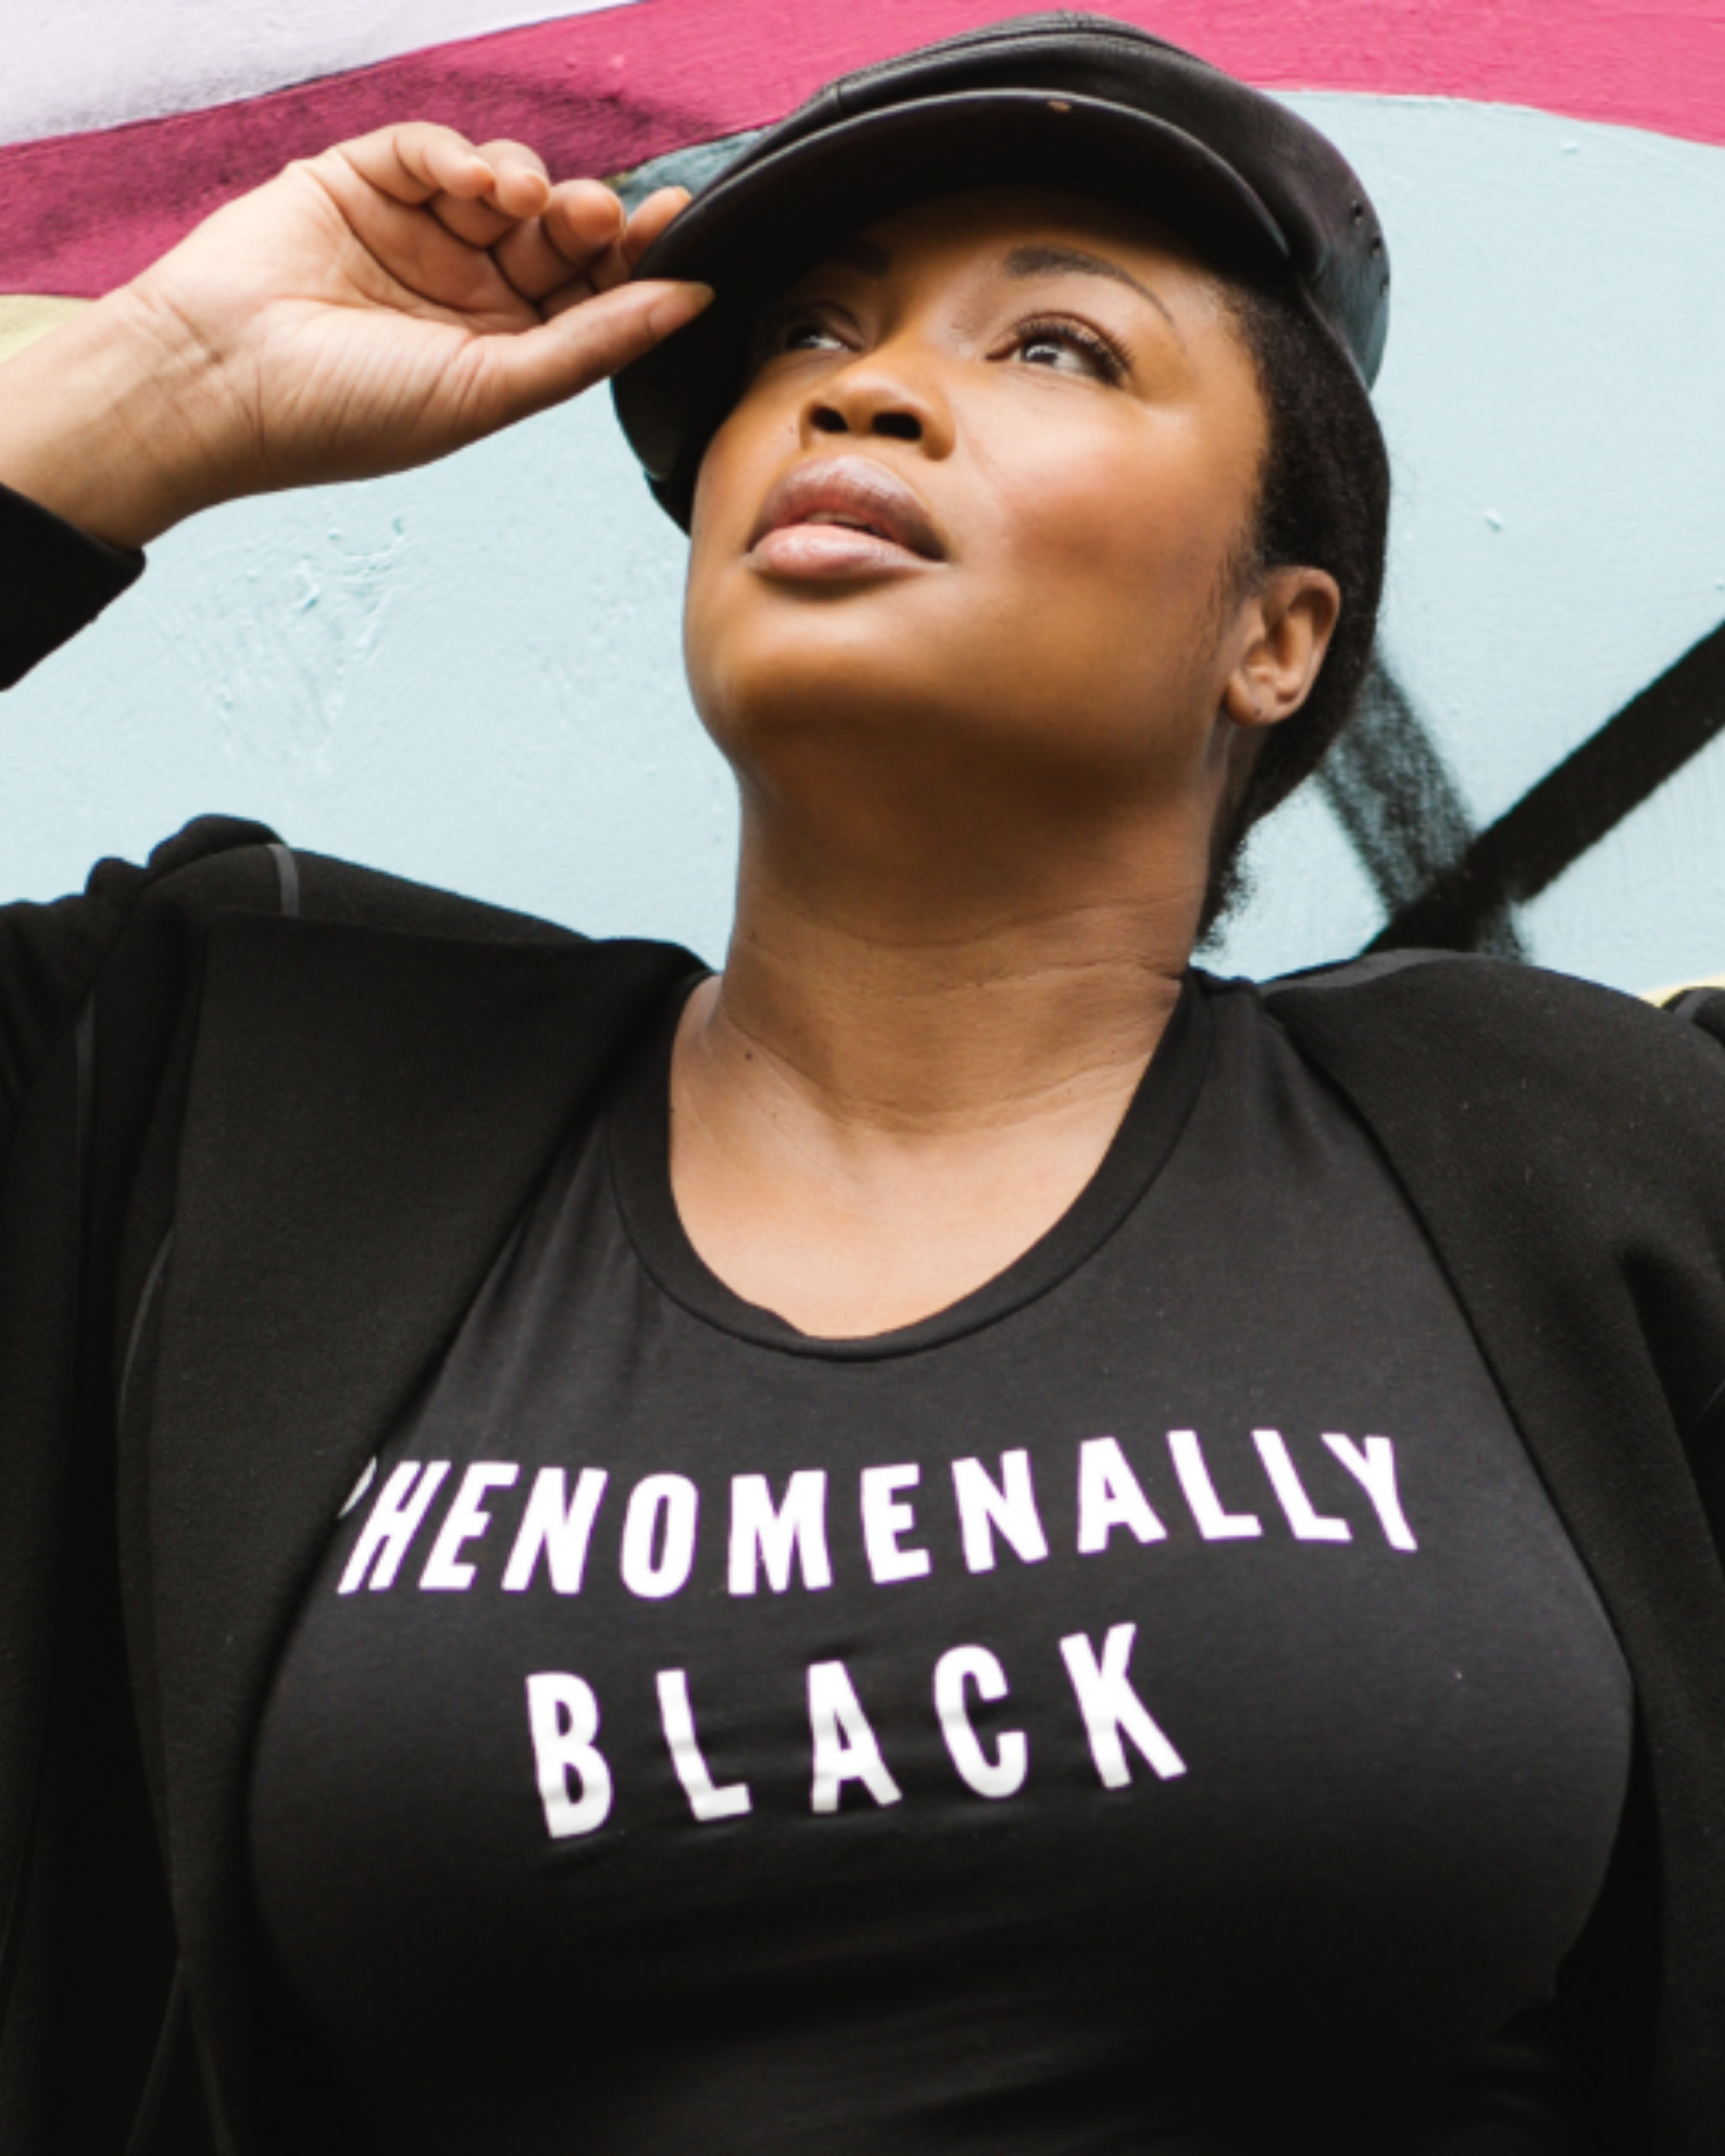 Diversité dans la mode avec Liris Crosse portant une chemise avec un noir phénoménal écrit dessus